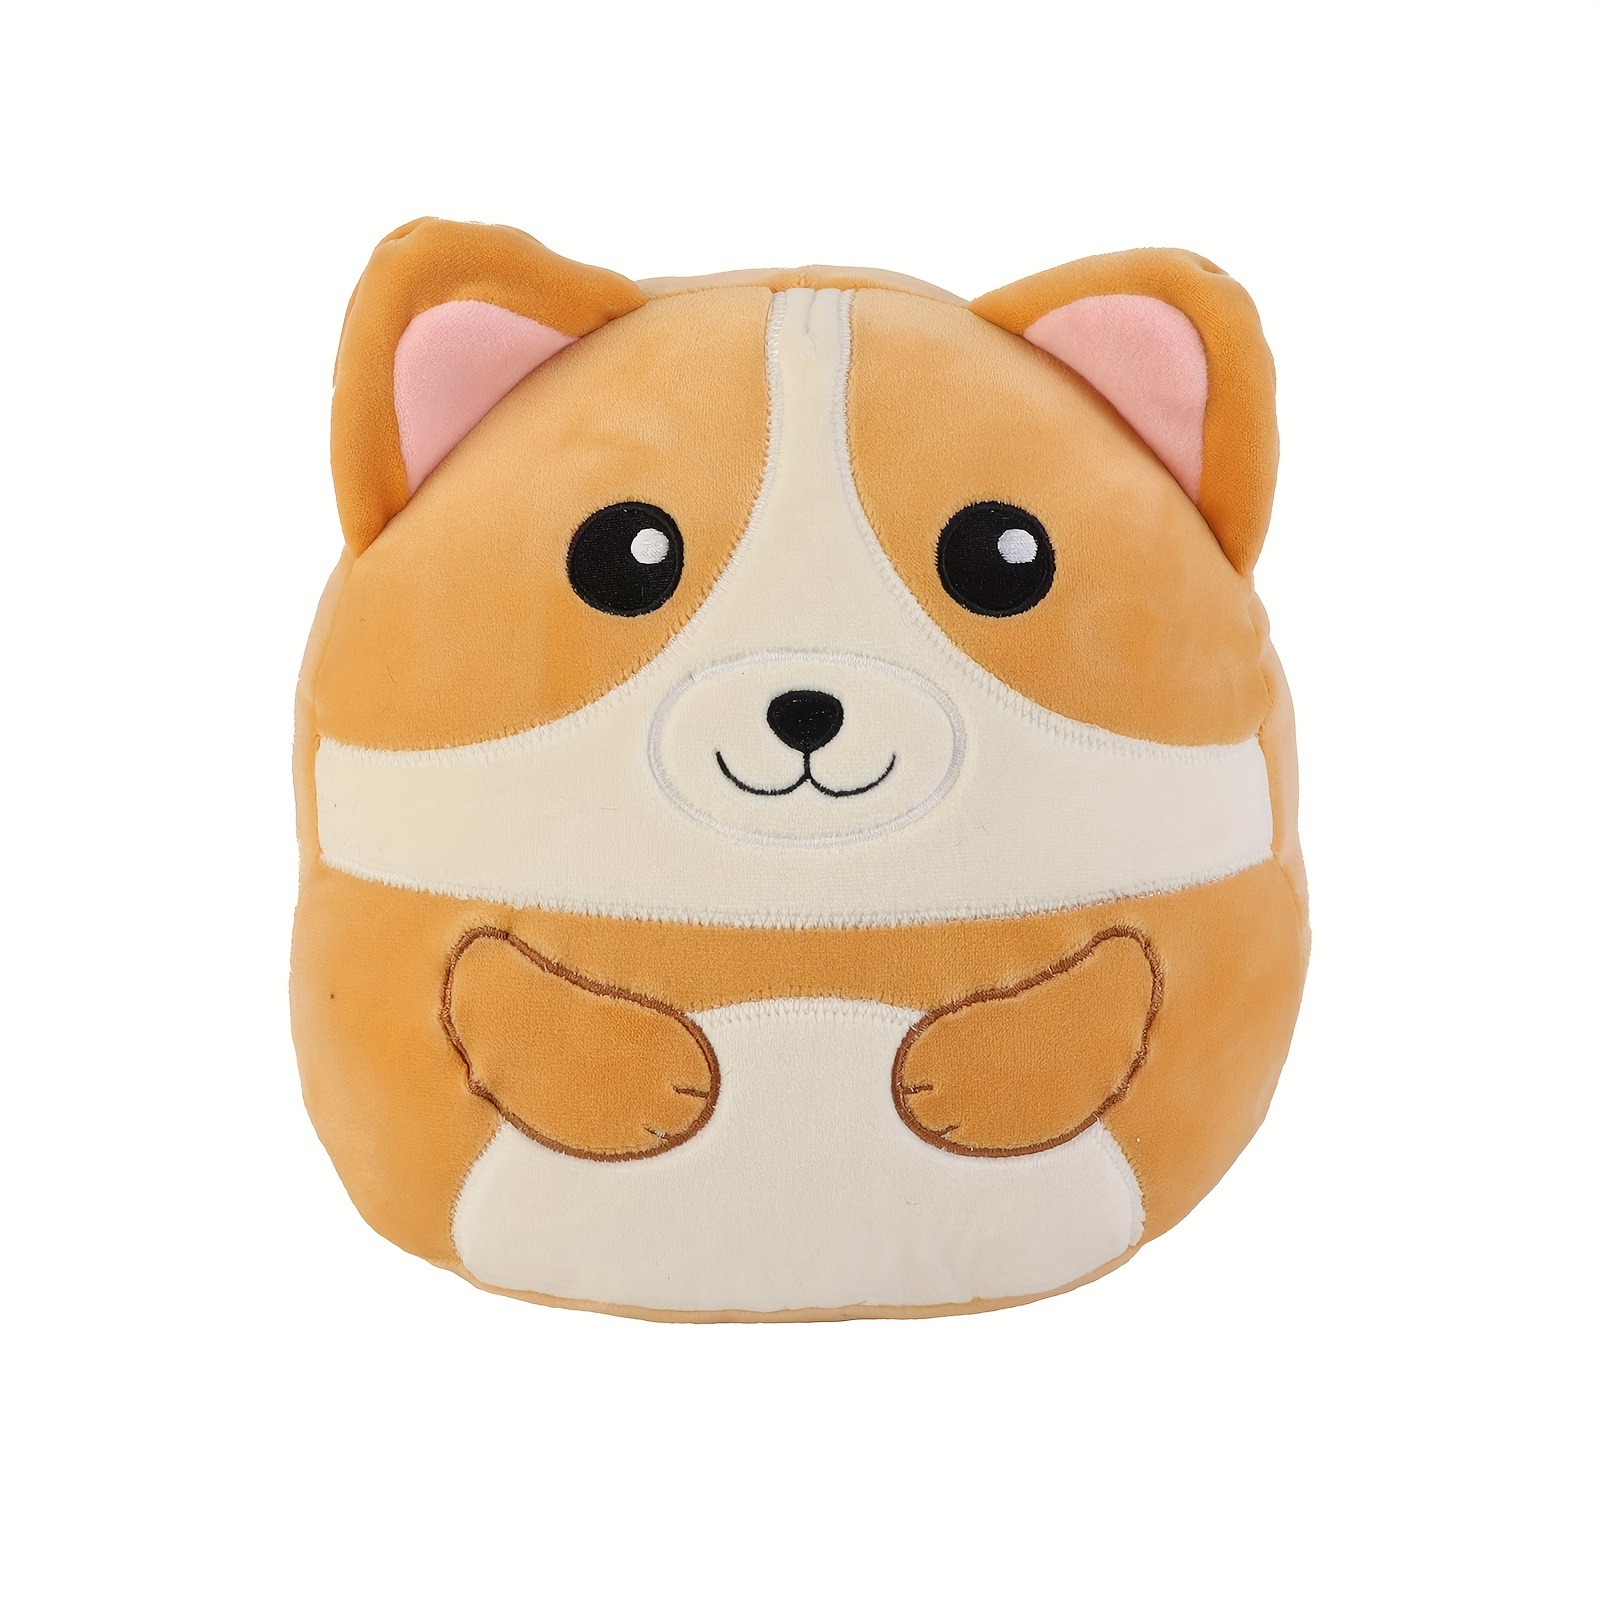 Mignon peluche Squishy peluche animal jouet, oreiller de corps Super soft  Kawaii peluche cadeau pour les enfants et petite amie lavable (panda 8  pouces)